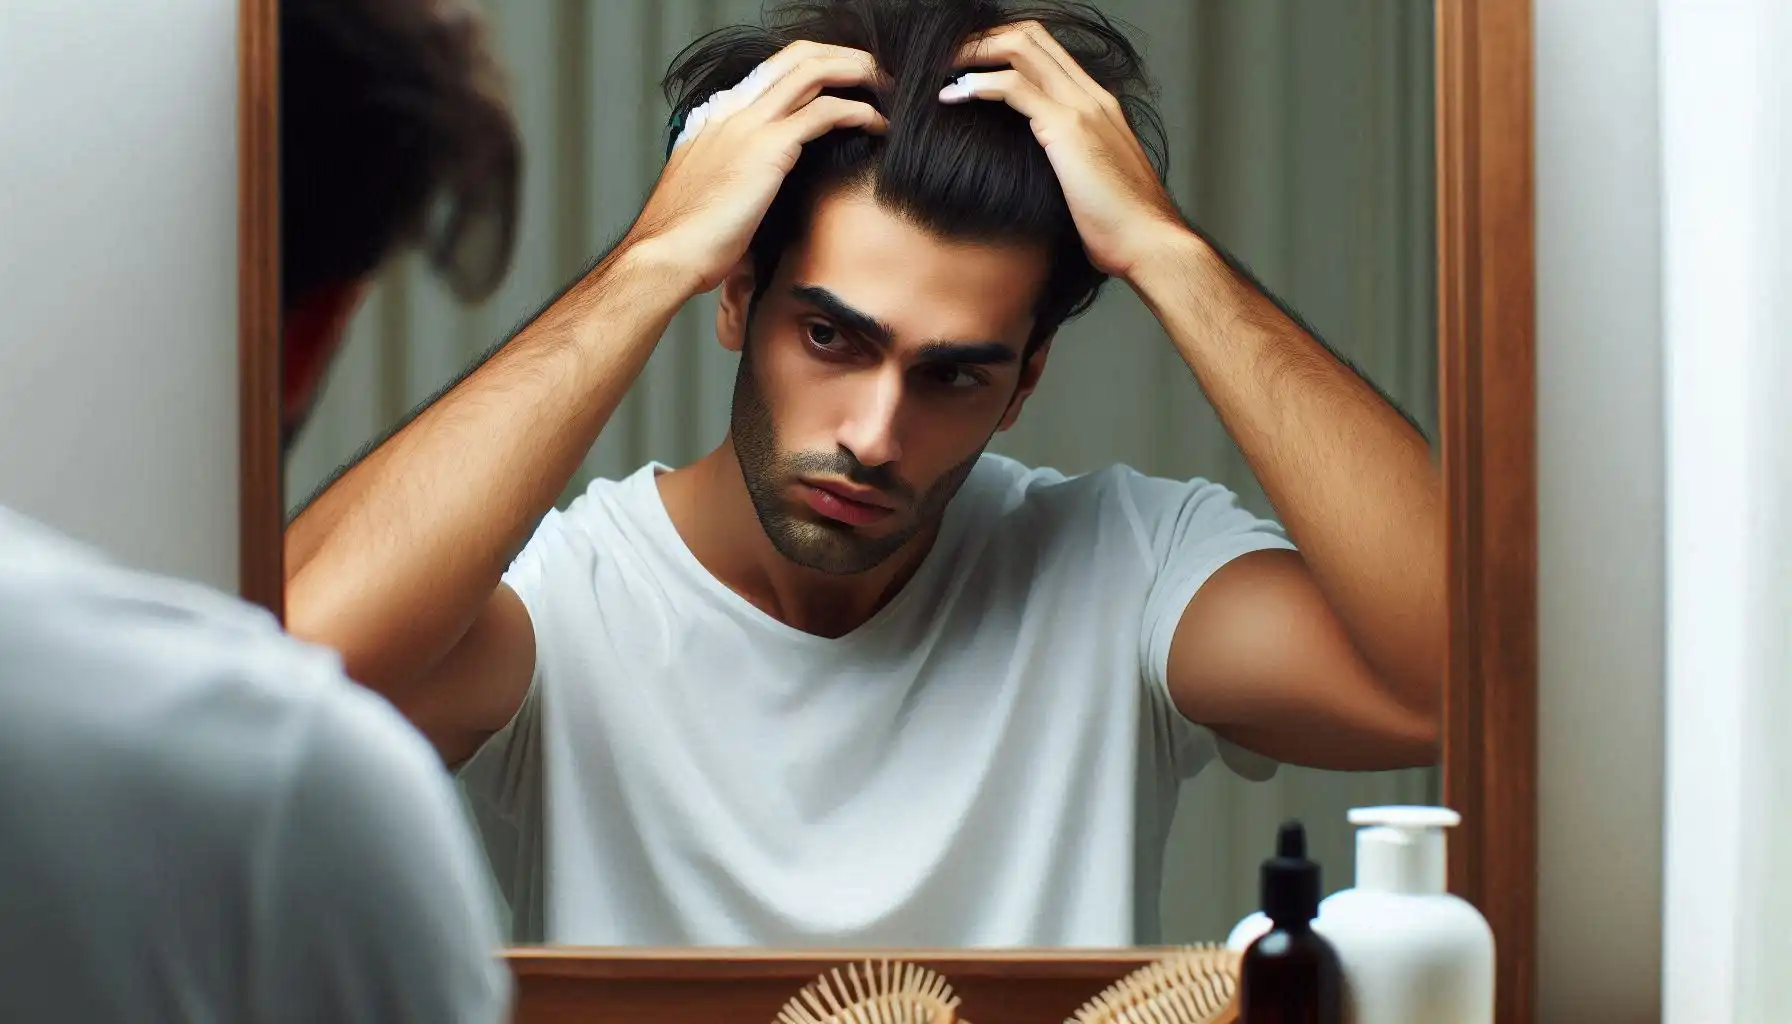 درمان ریزش مو در مردان